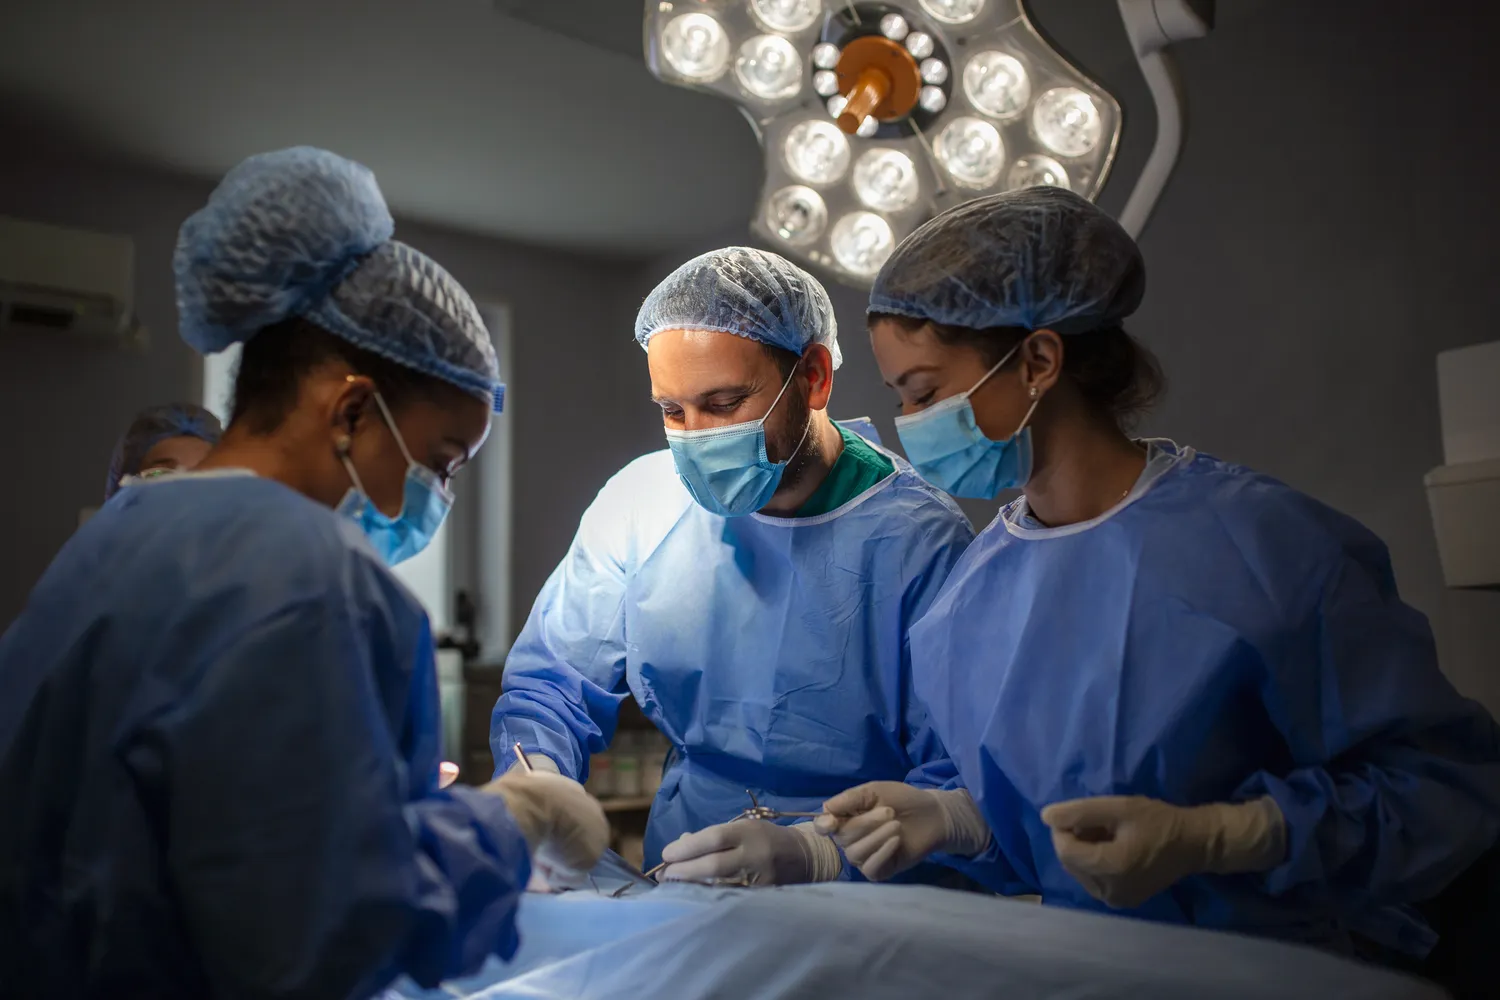 Chirurgia plastyczna - najpopularniejsze zabiegi, możliwe powikłania, kiedy z niej skorzystać?